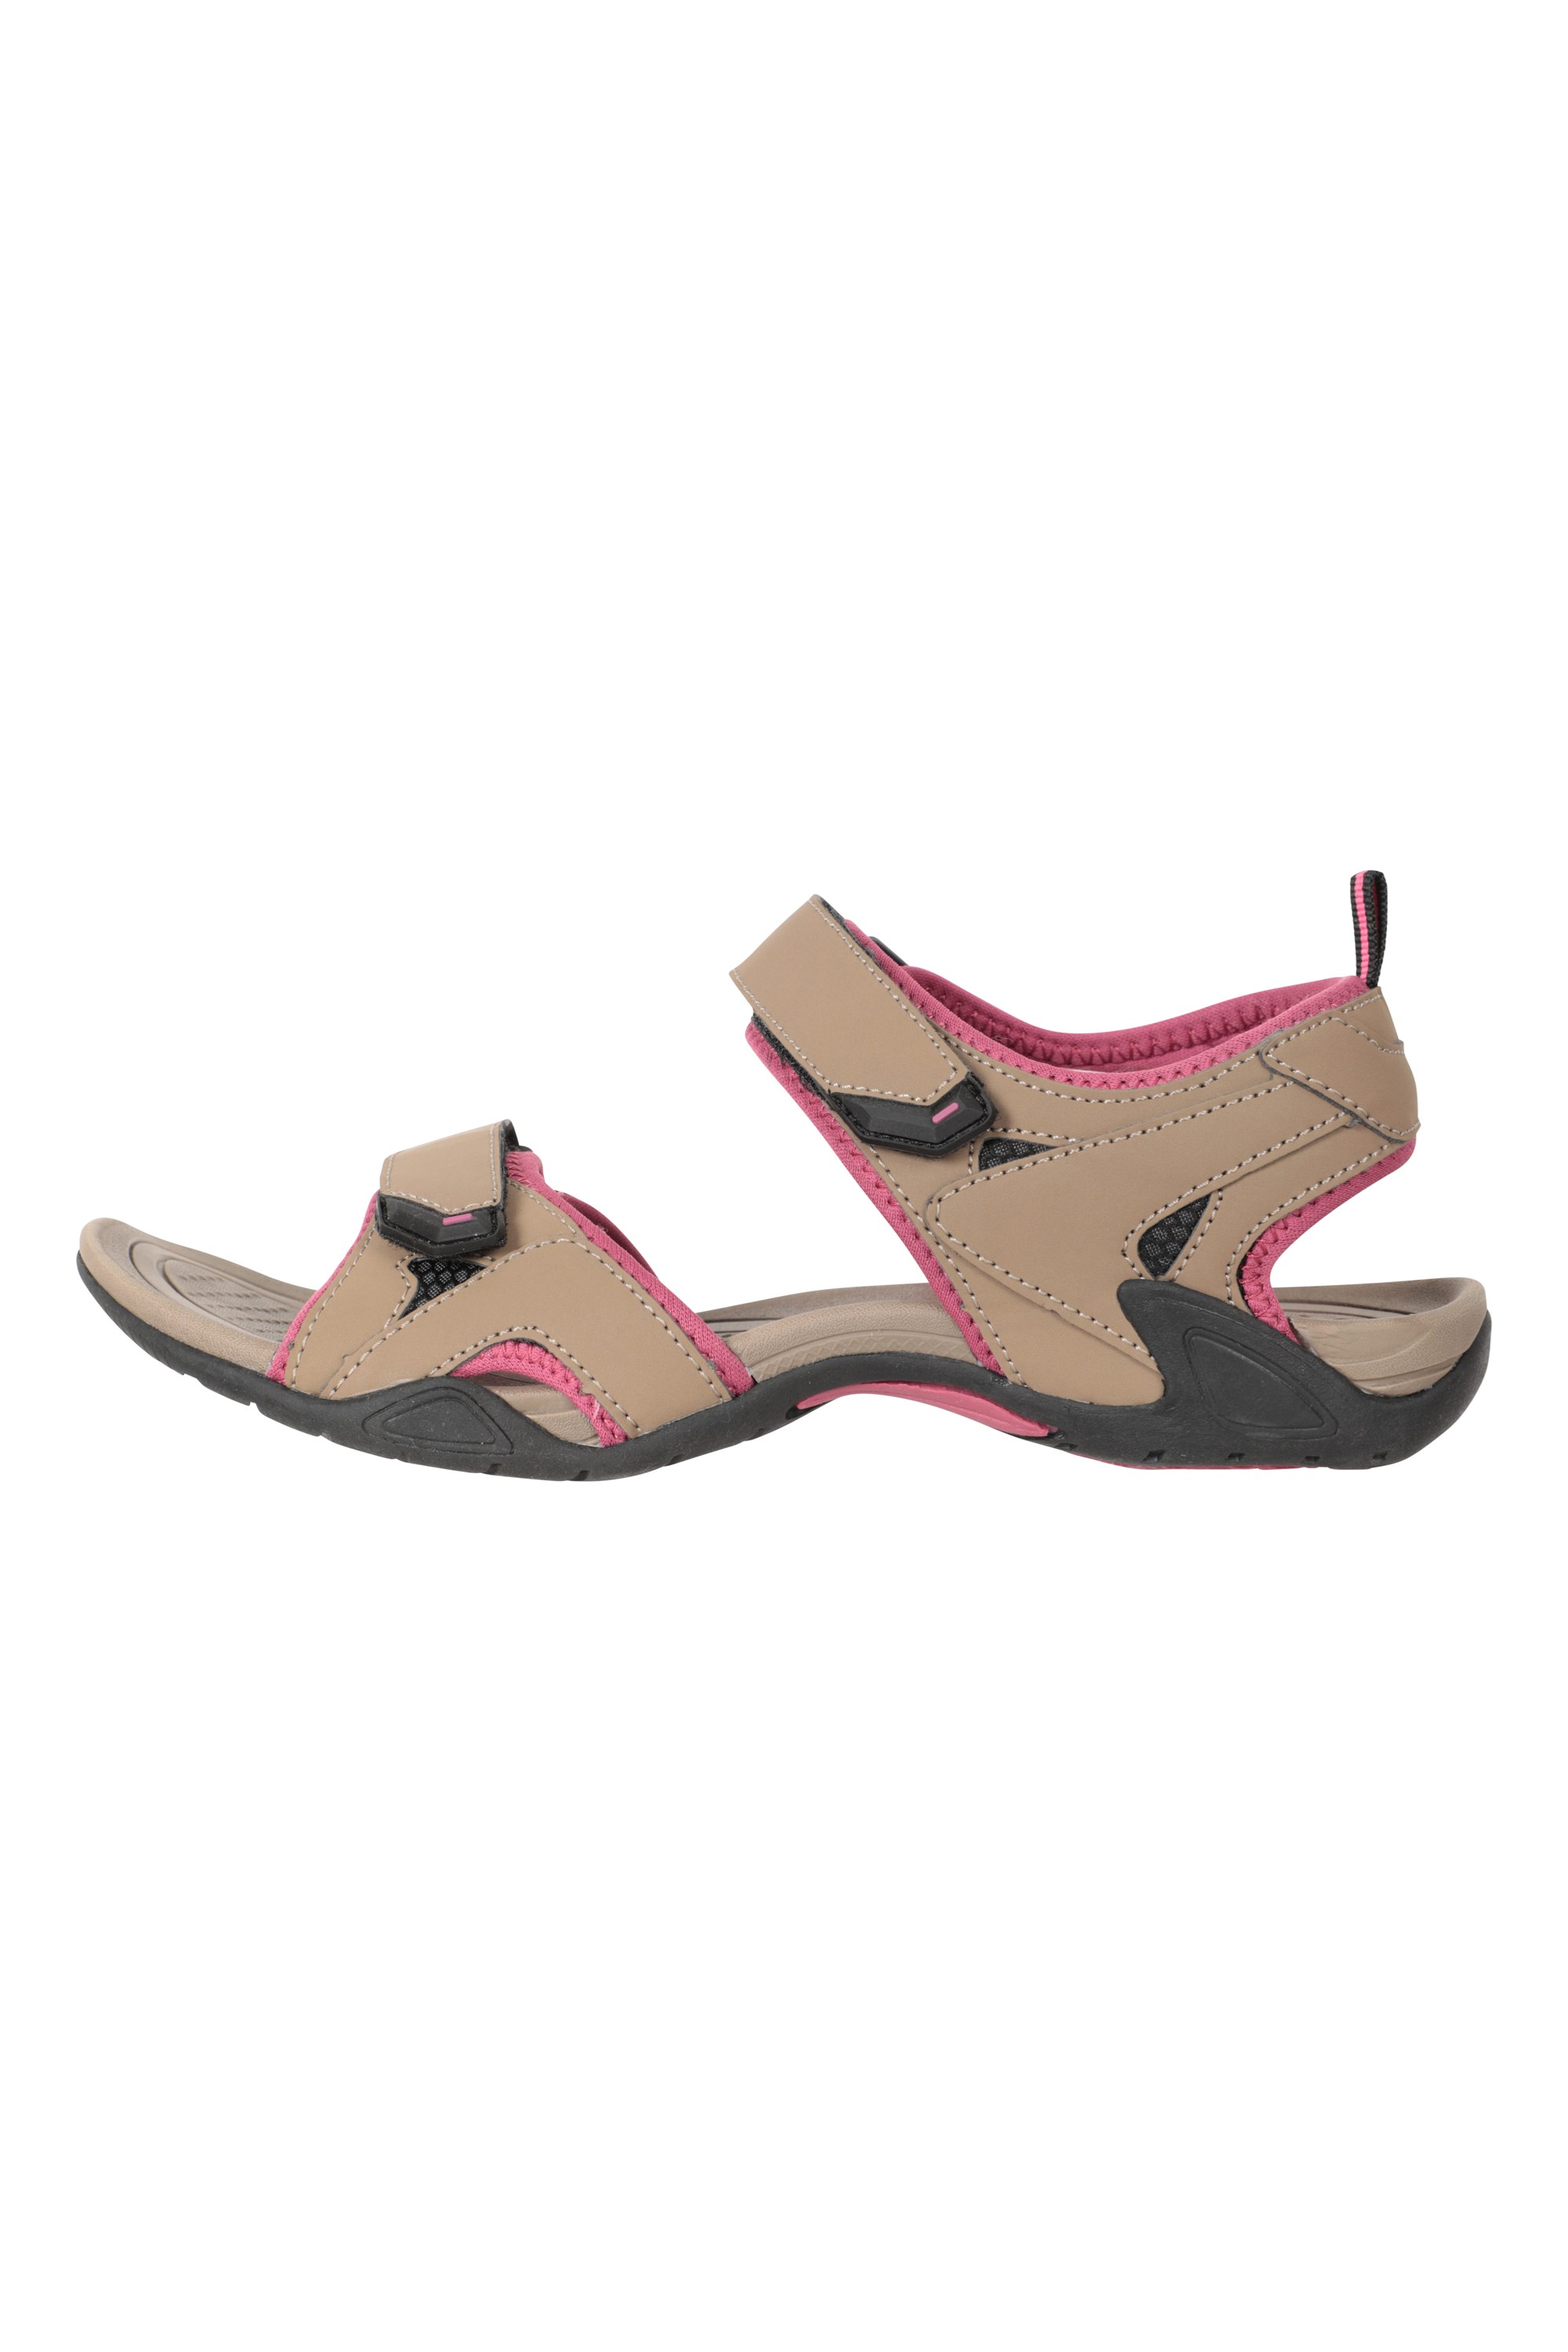 Pair-it-Mn-Sandals-RE-Gladio111-BlackOrange - RCM